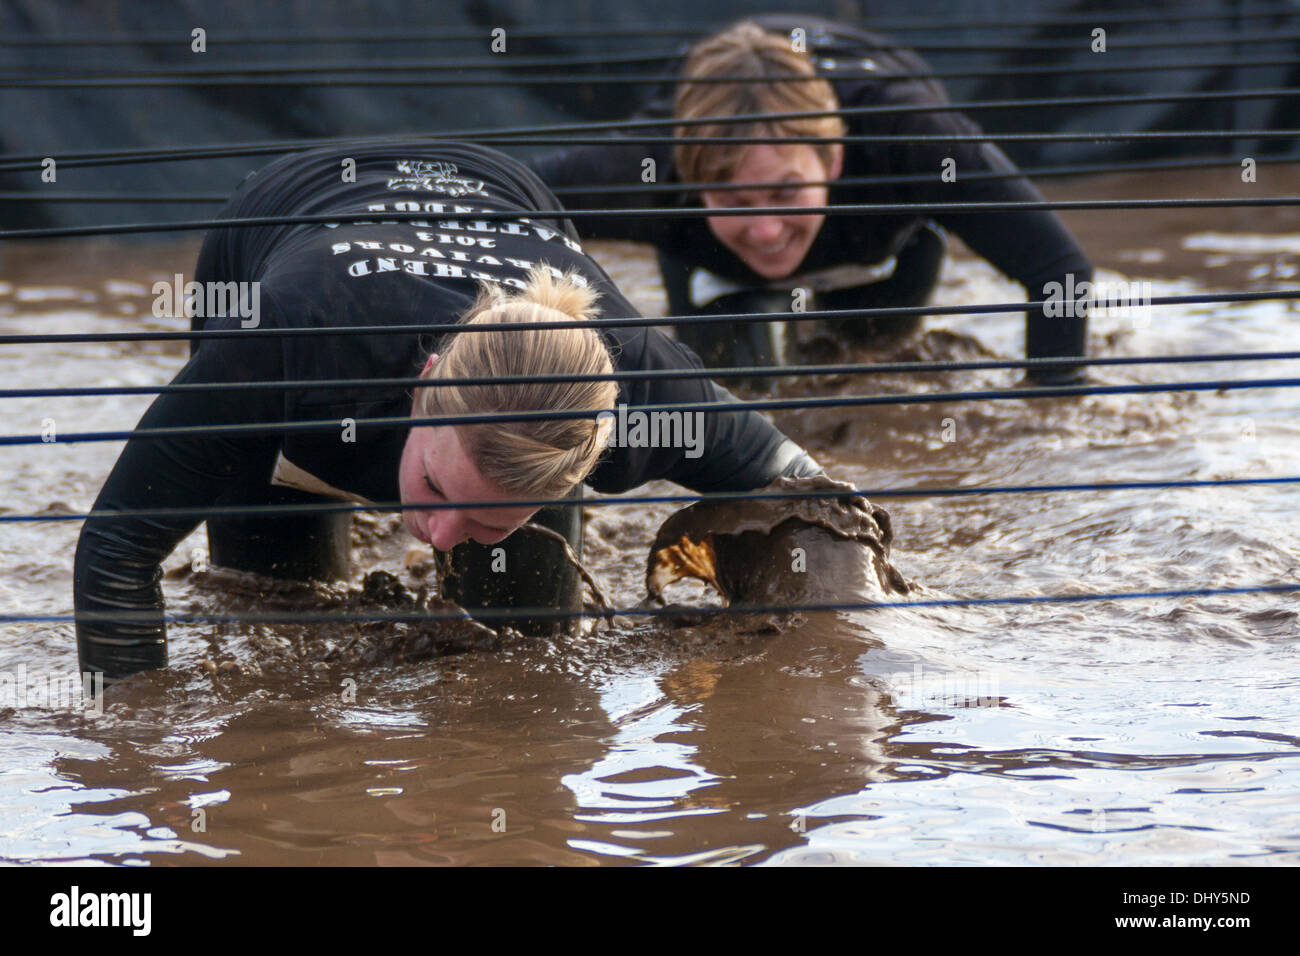 Battersea, Londres, Royaume-Uni. 16 novembre 2013. Les concurrents de ramper dans la boue à la santé masculine la survie du plus fort de l'événement 2013 à Battersea Power Station. Crédit : Paul Davey/Alamy Live News Banque D'Images